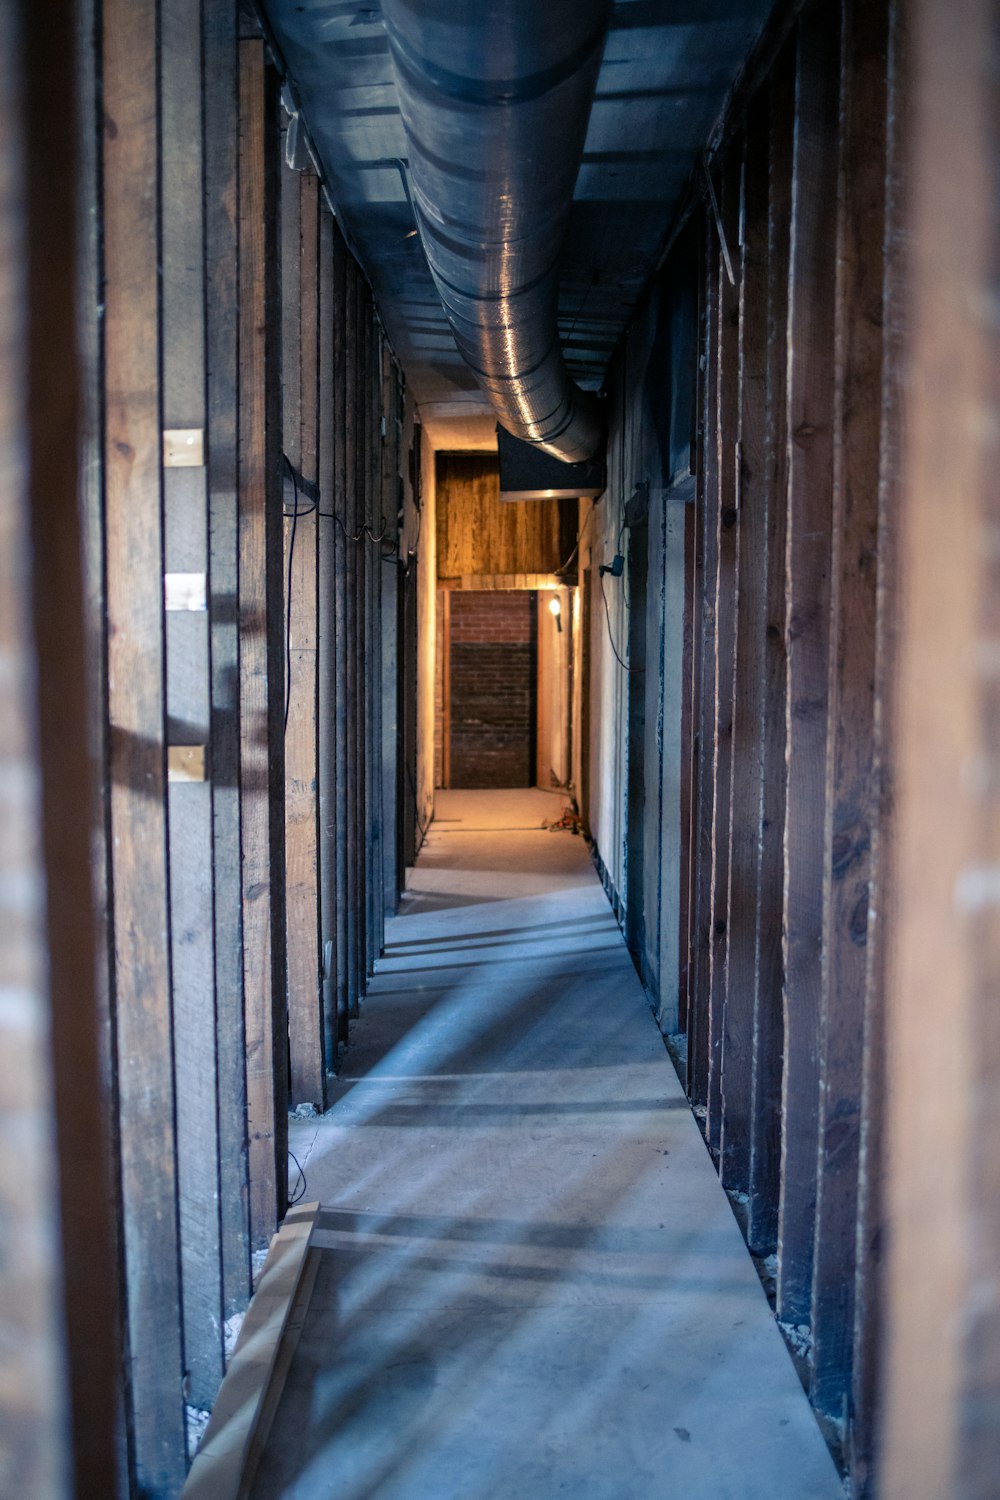 gray concrete hallway with brown wooden doors